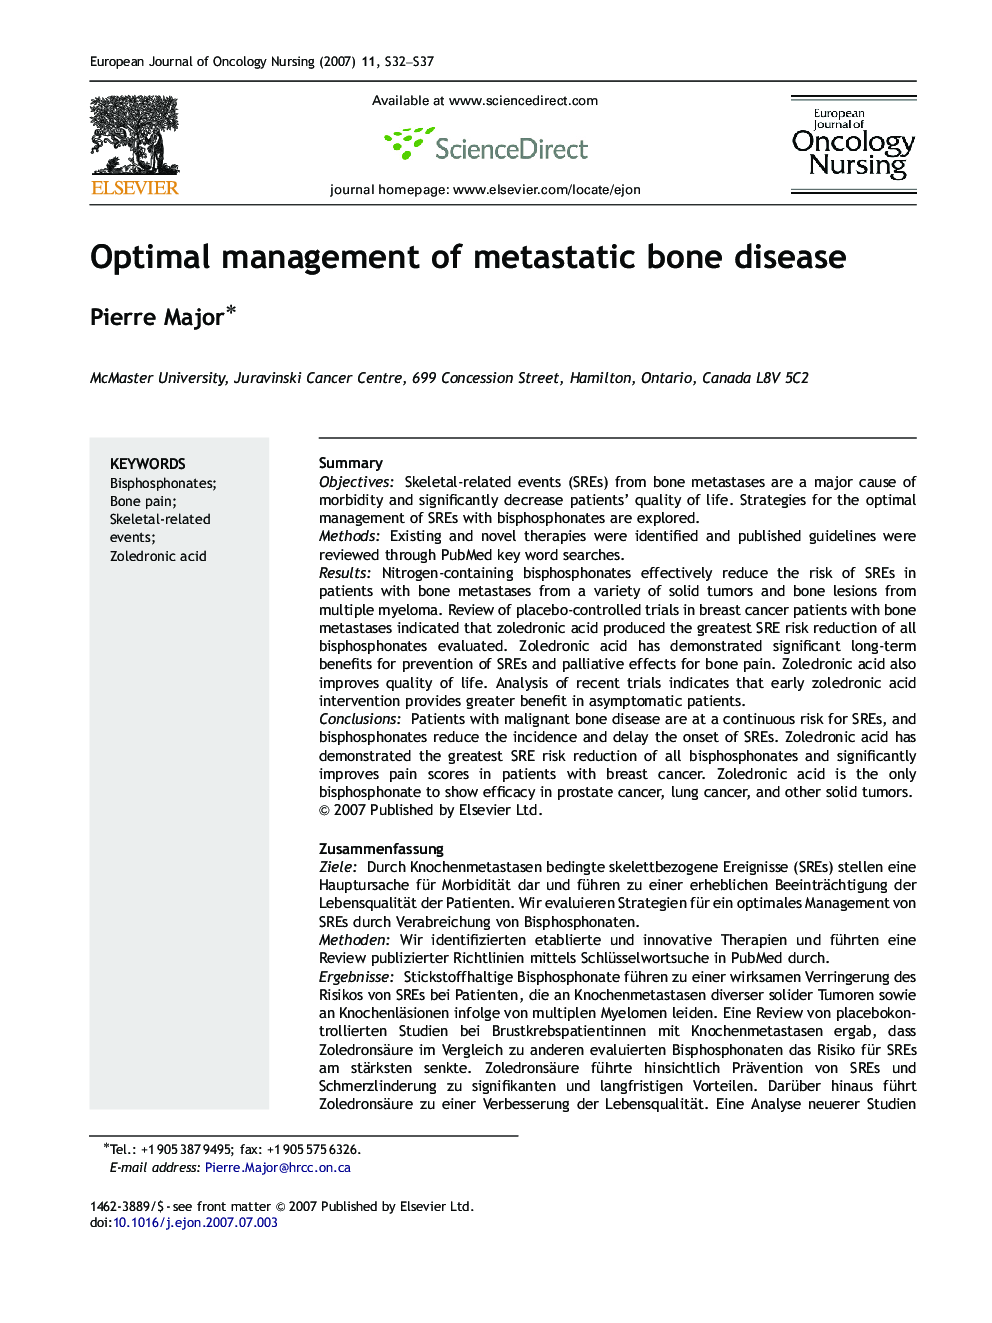 Optimal management of metastatic bone disease